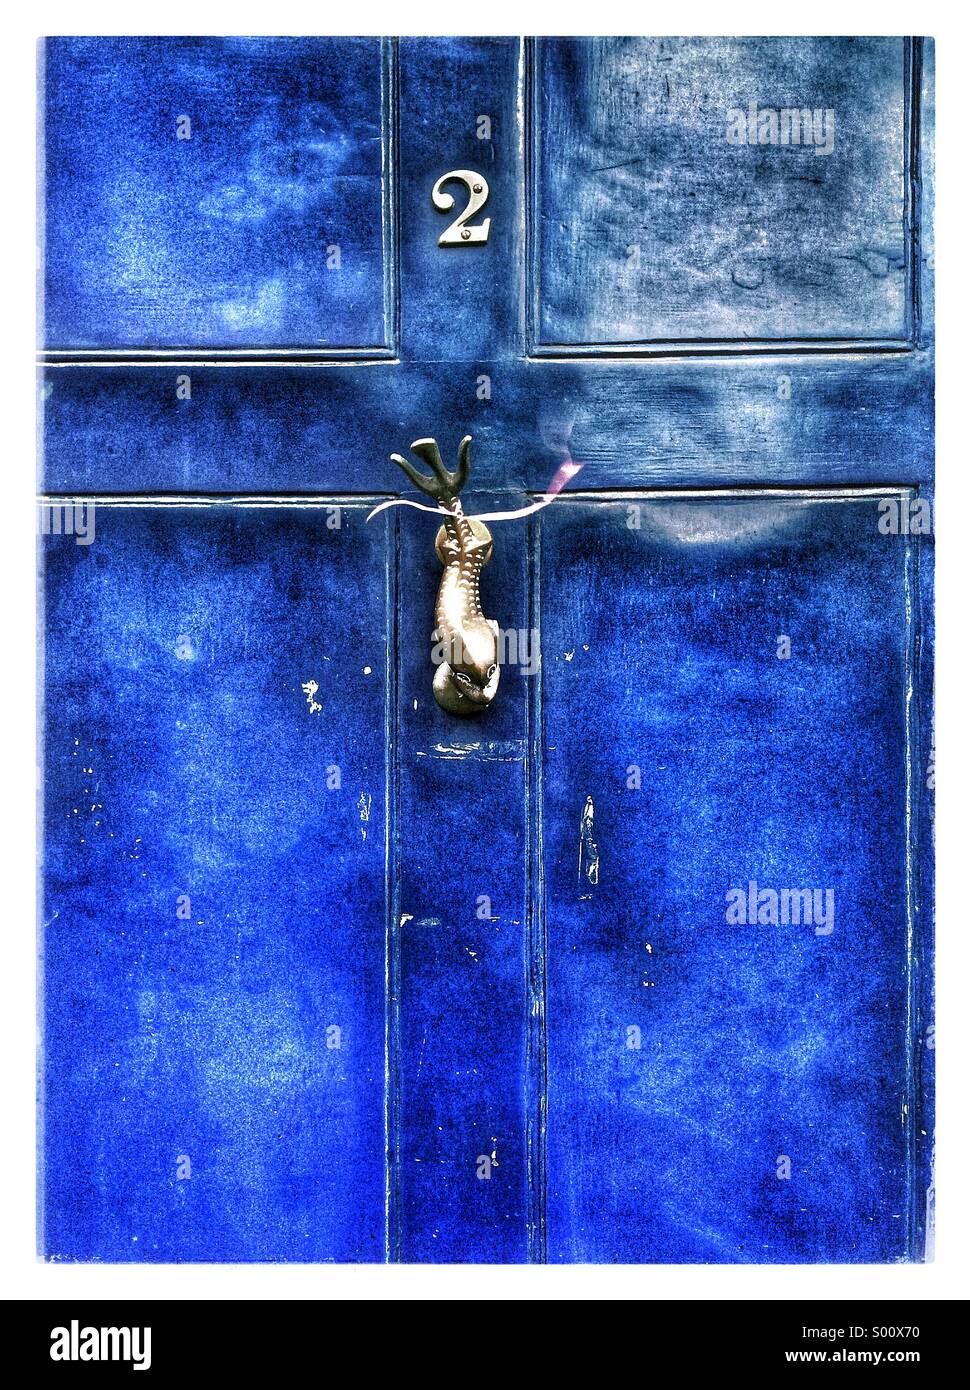 Eine helle blaue farbige Tür mit einem Fisch geformt Klopfer. Stockfoto